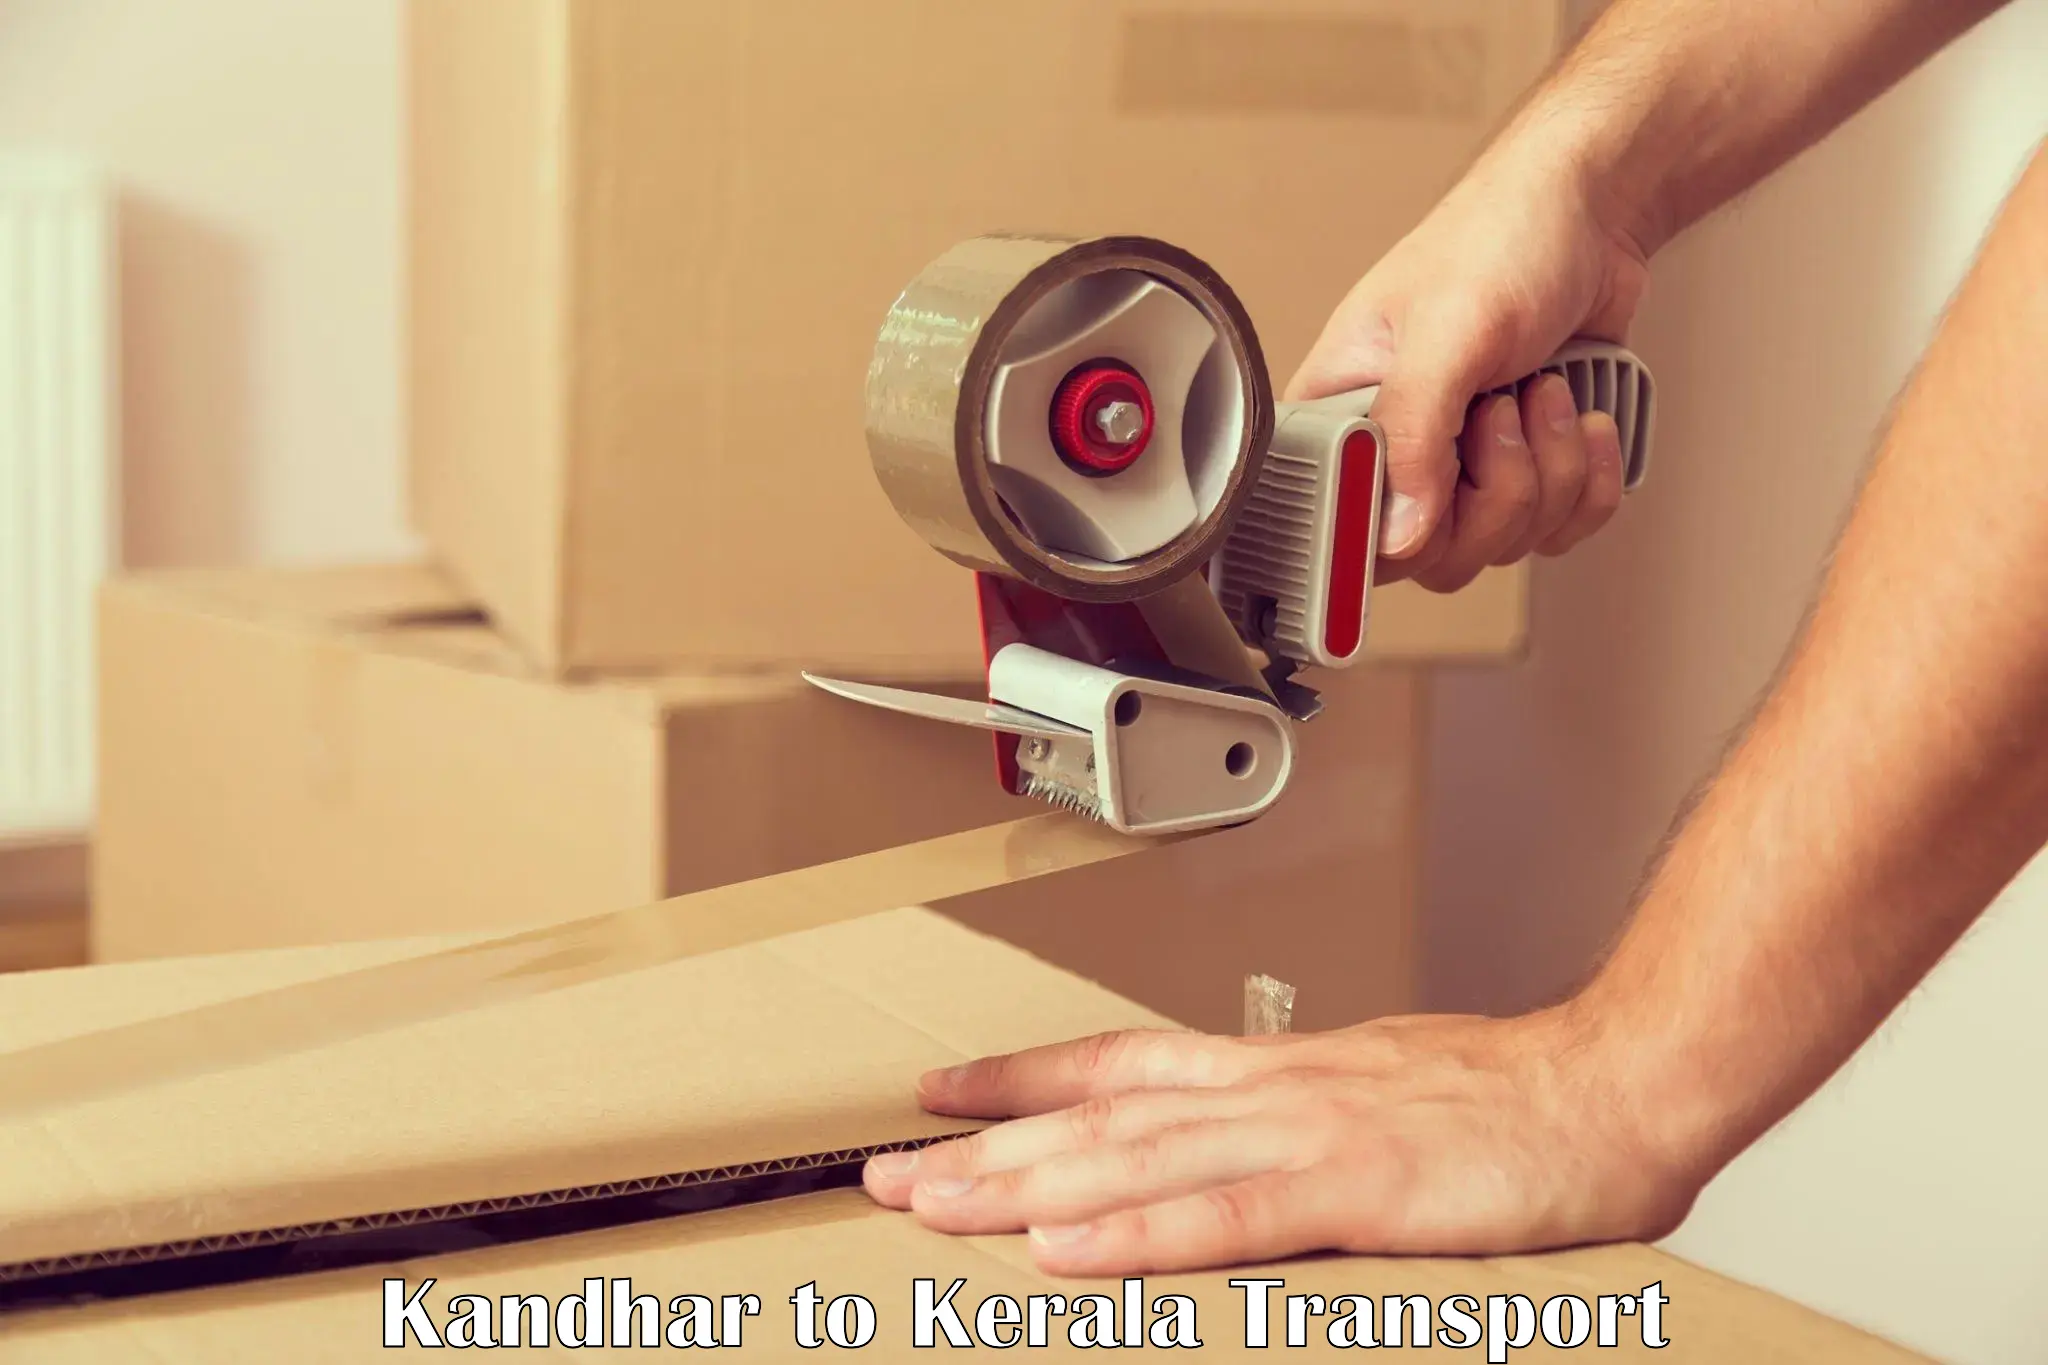 Lorry transport service Kandhar to Manthuka